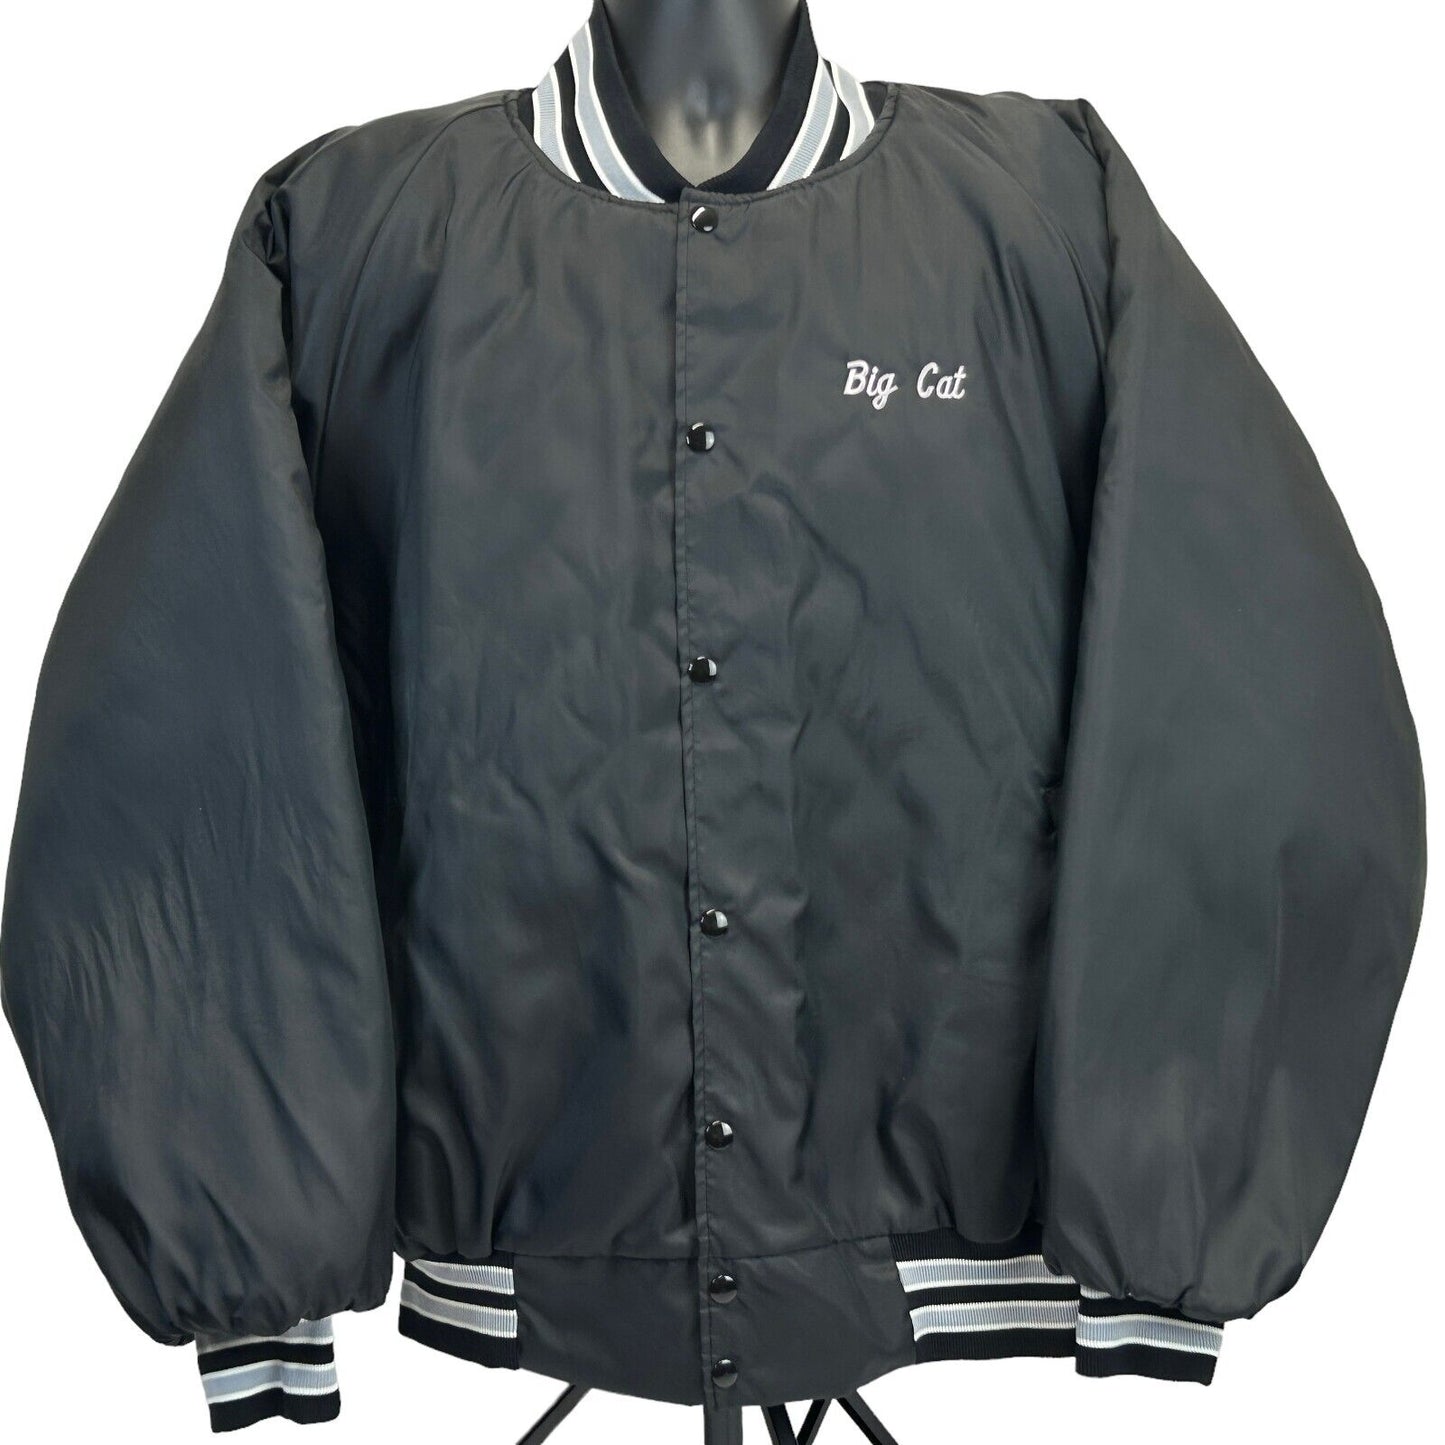 Kaz's Softball Milwaukee Vintage 90s Satin Jacket Black Bomber Made In USA 3XL